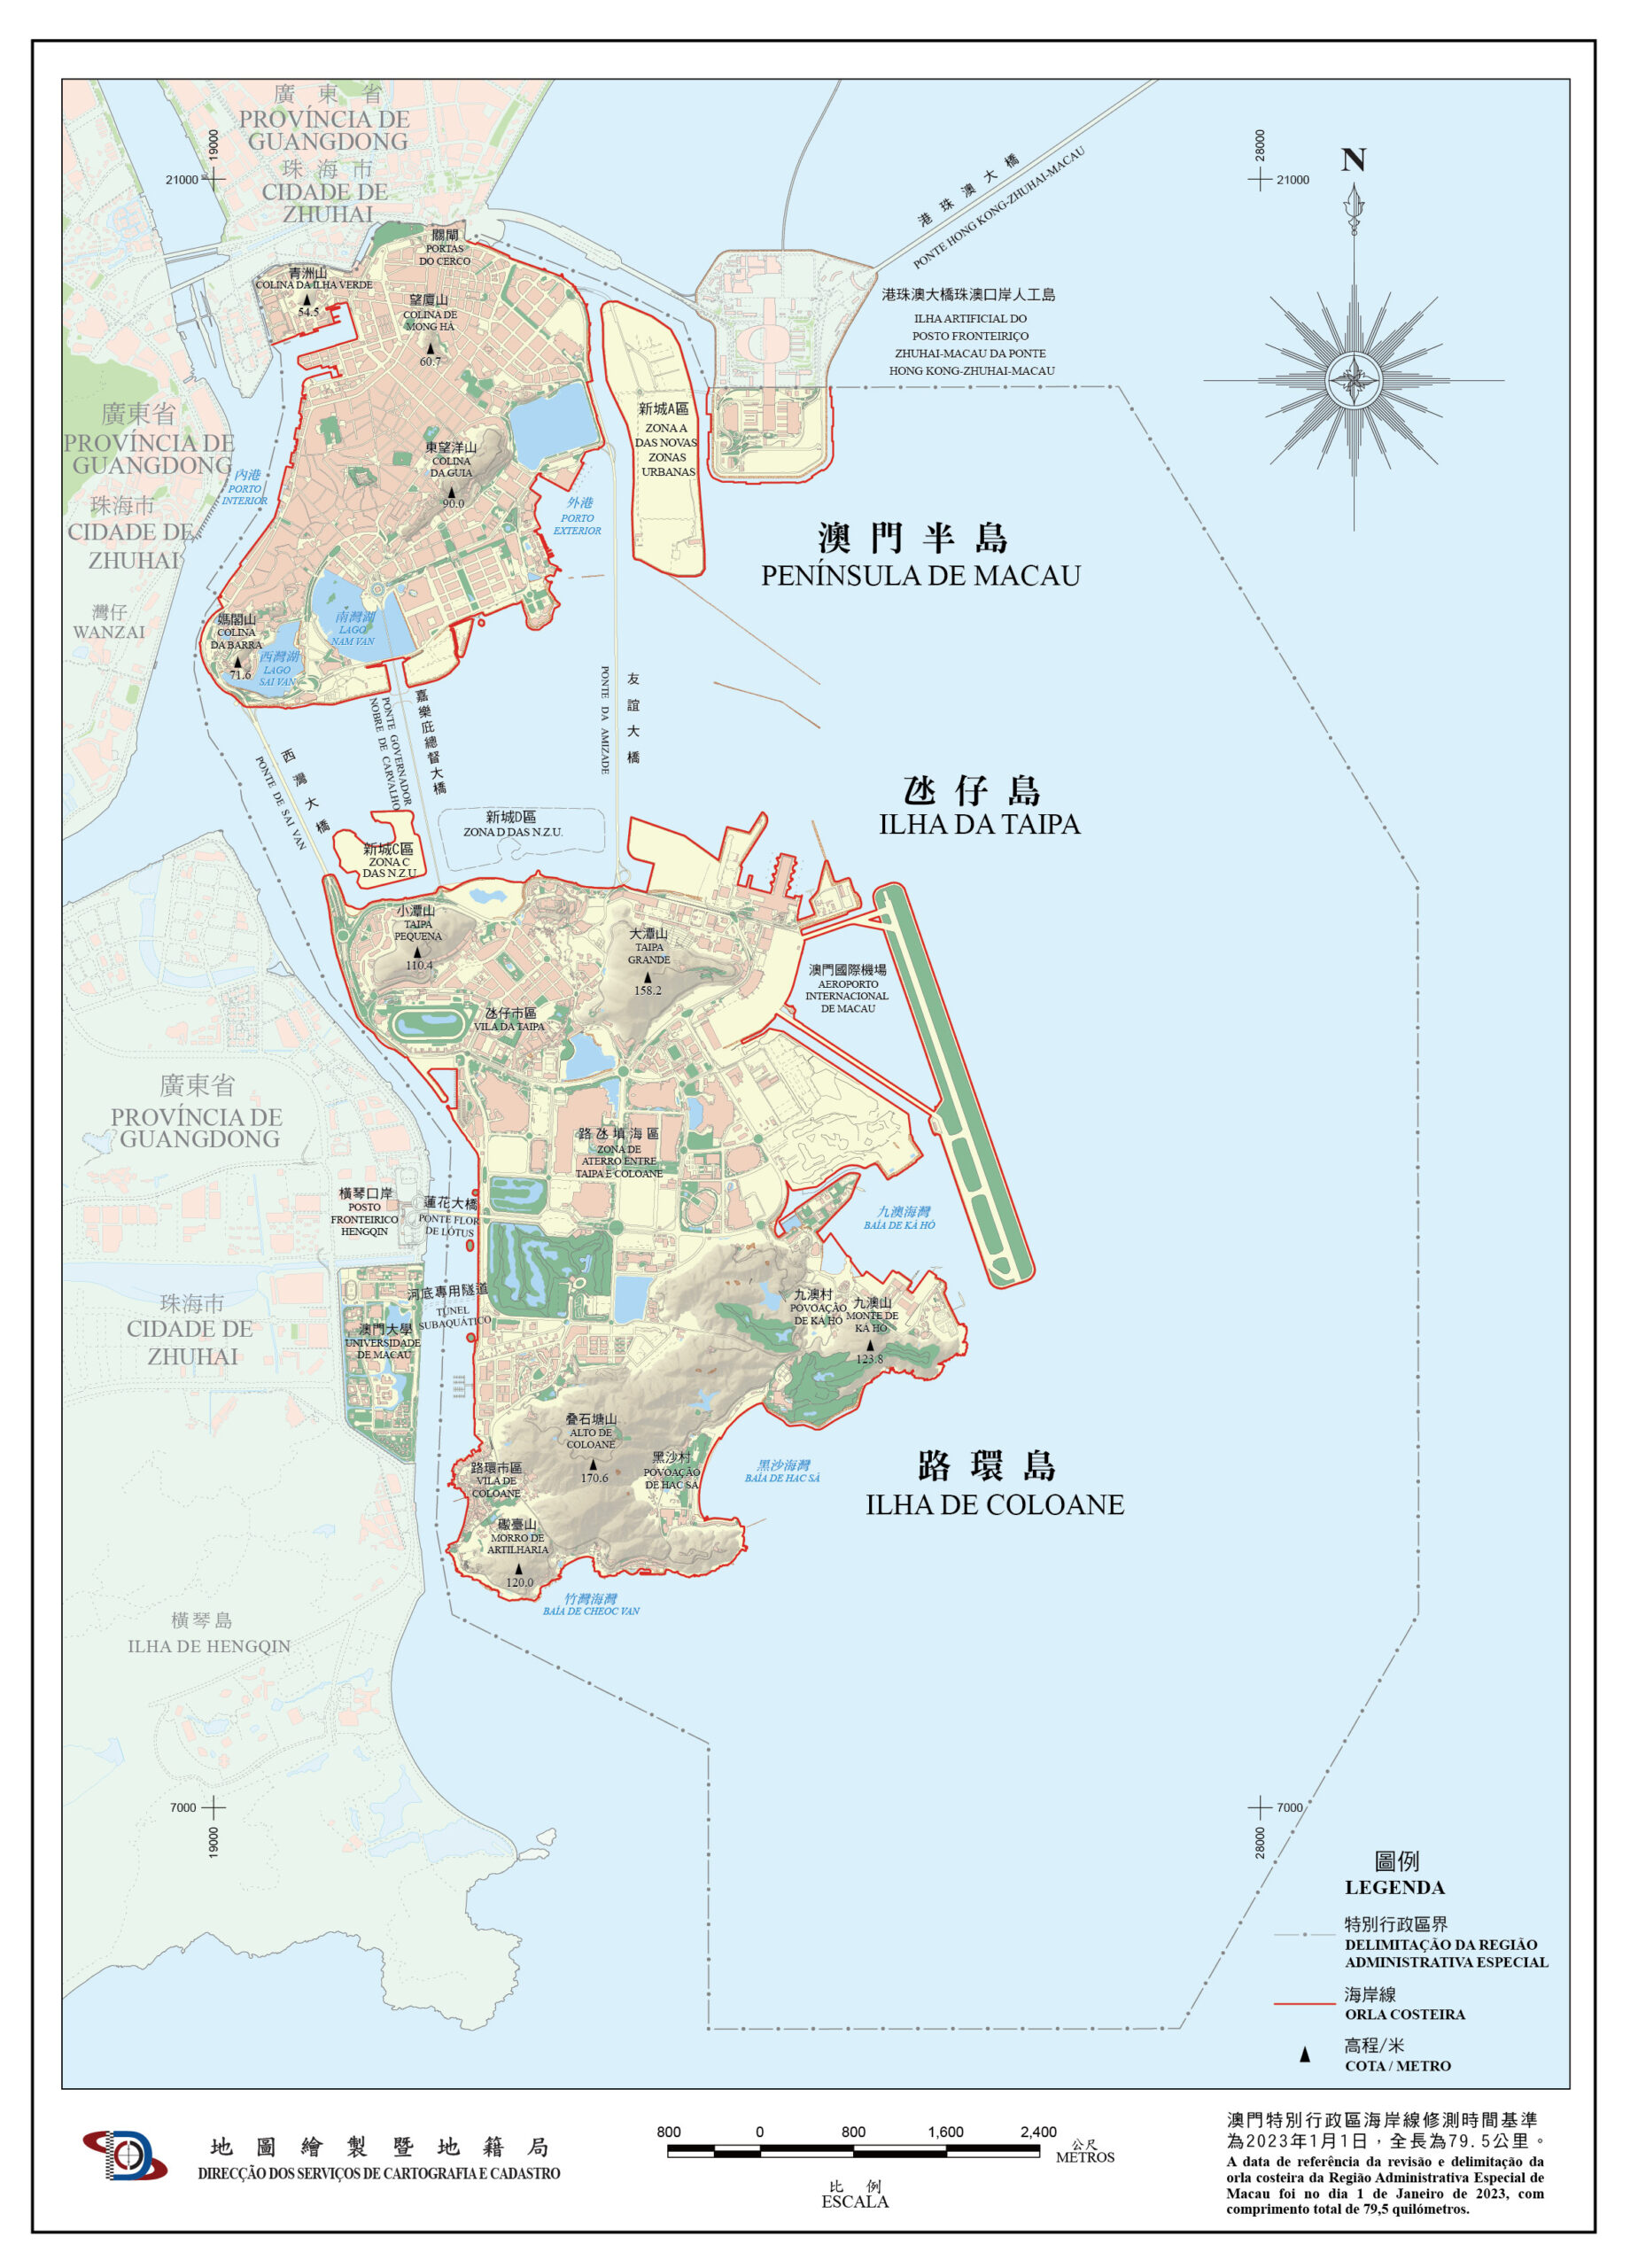 Orla costeira | Publicado mapa com novos limites